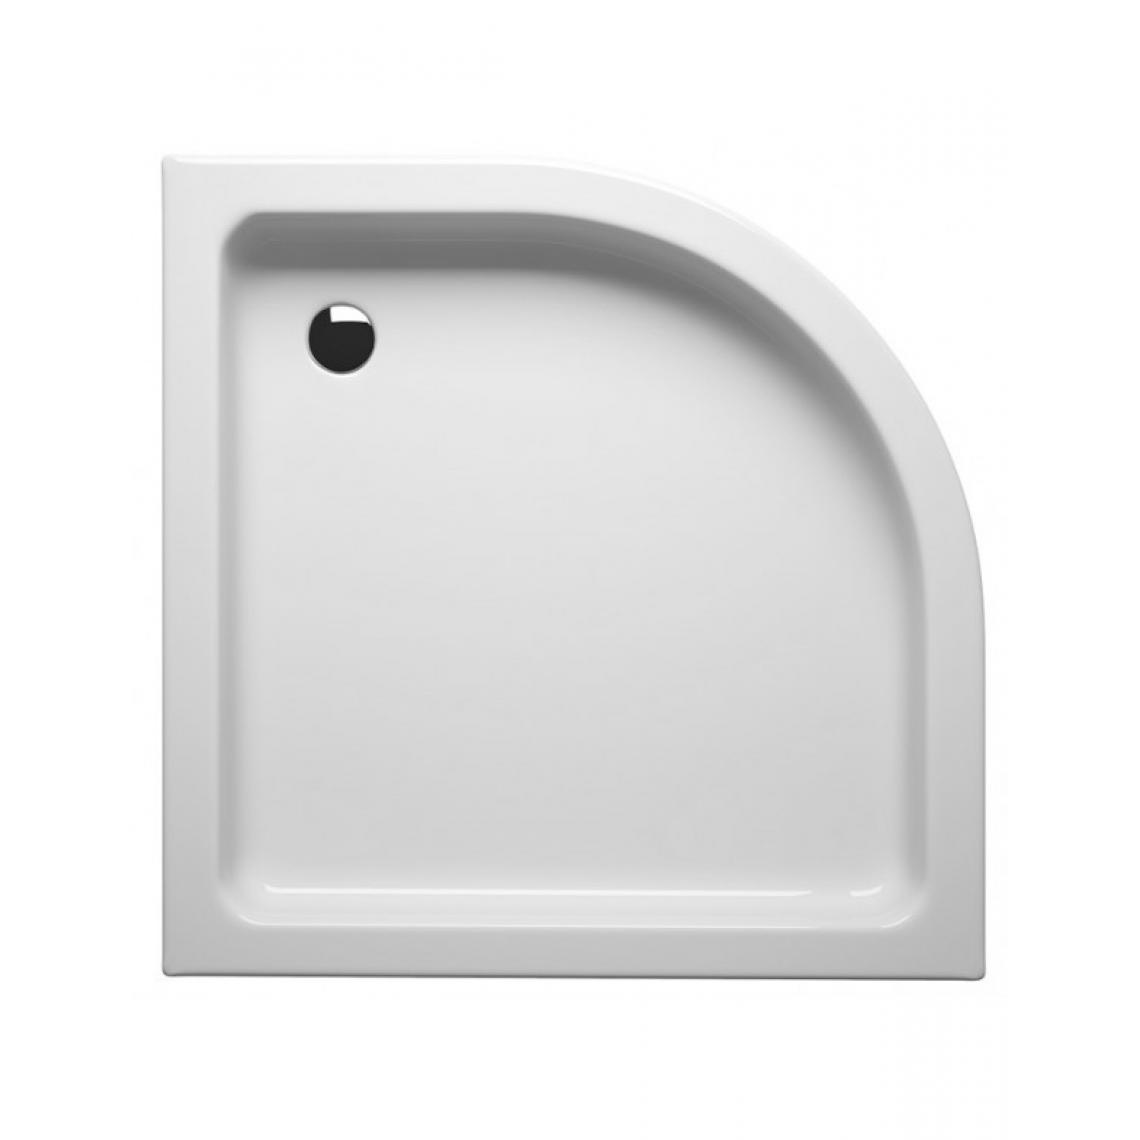 Riho - Receveur de douche acrylique quadrant avec tablier RIHO 210 90x90x8,5cm - Receveur de douche